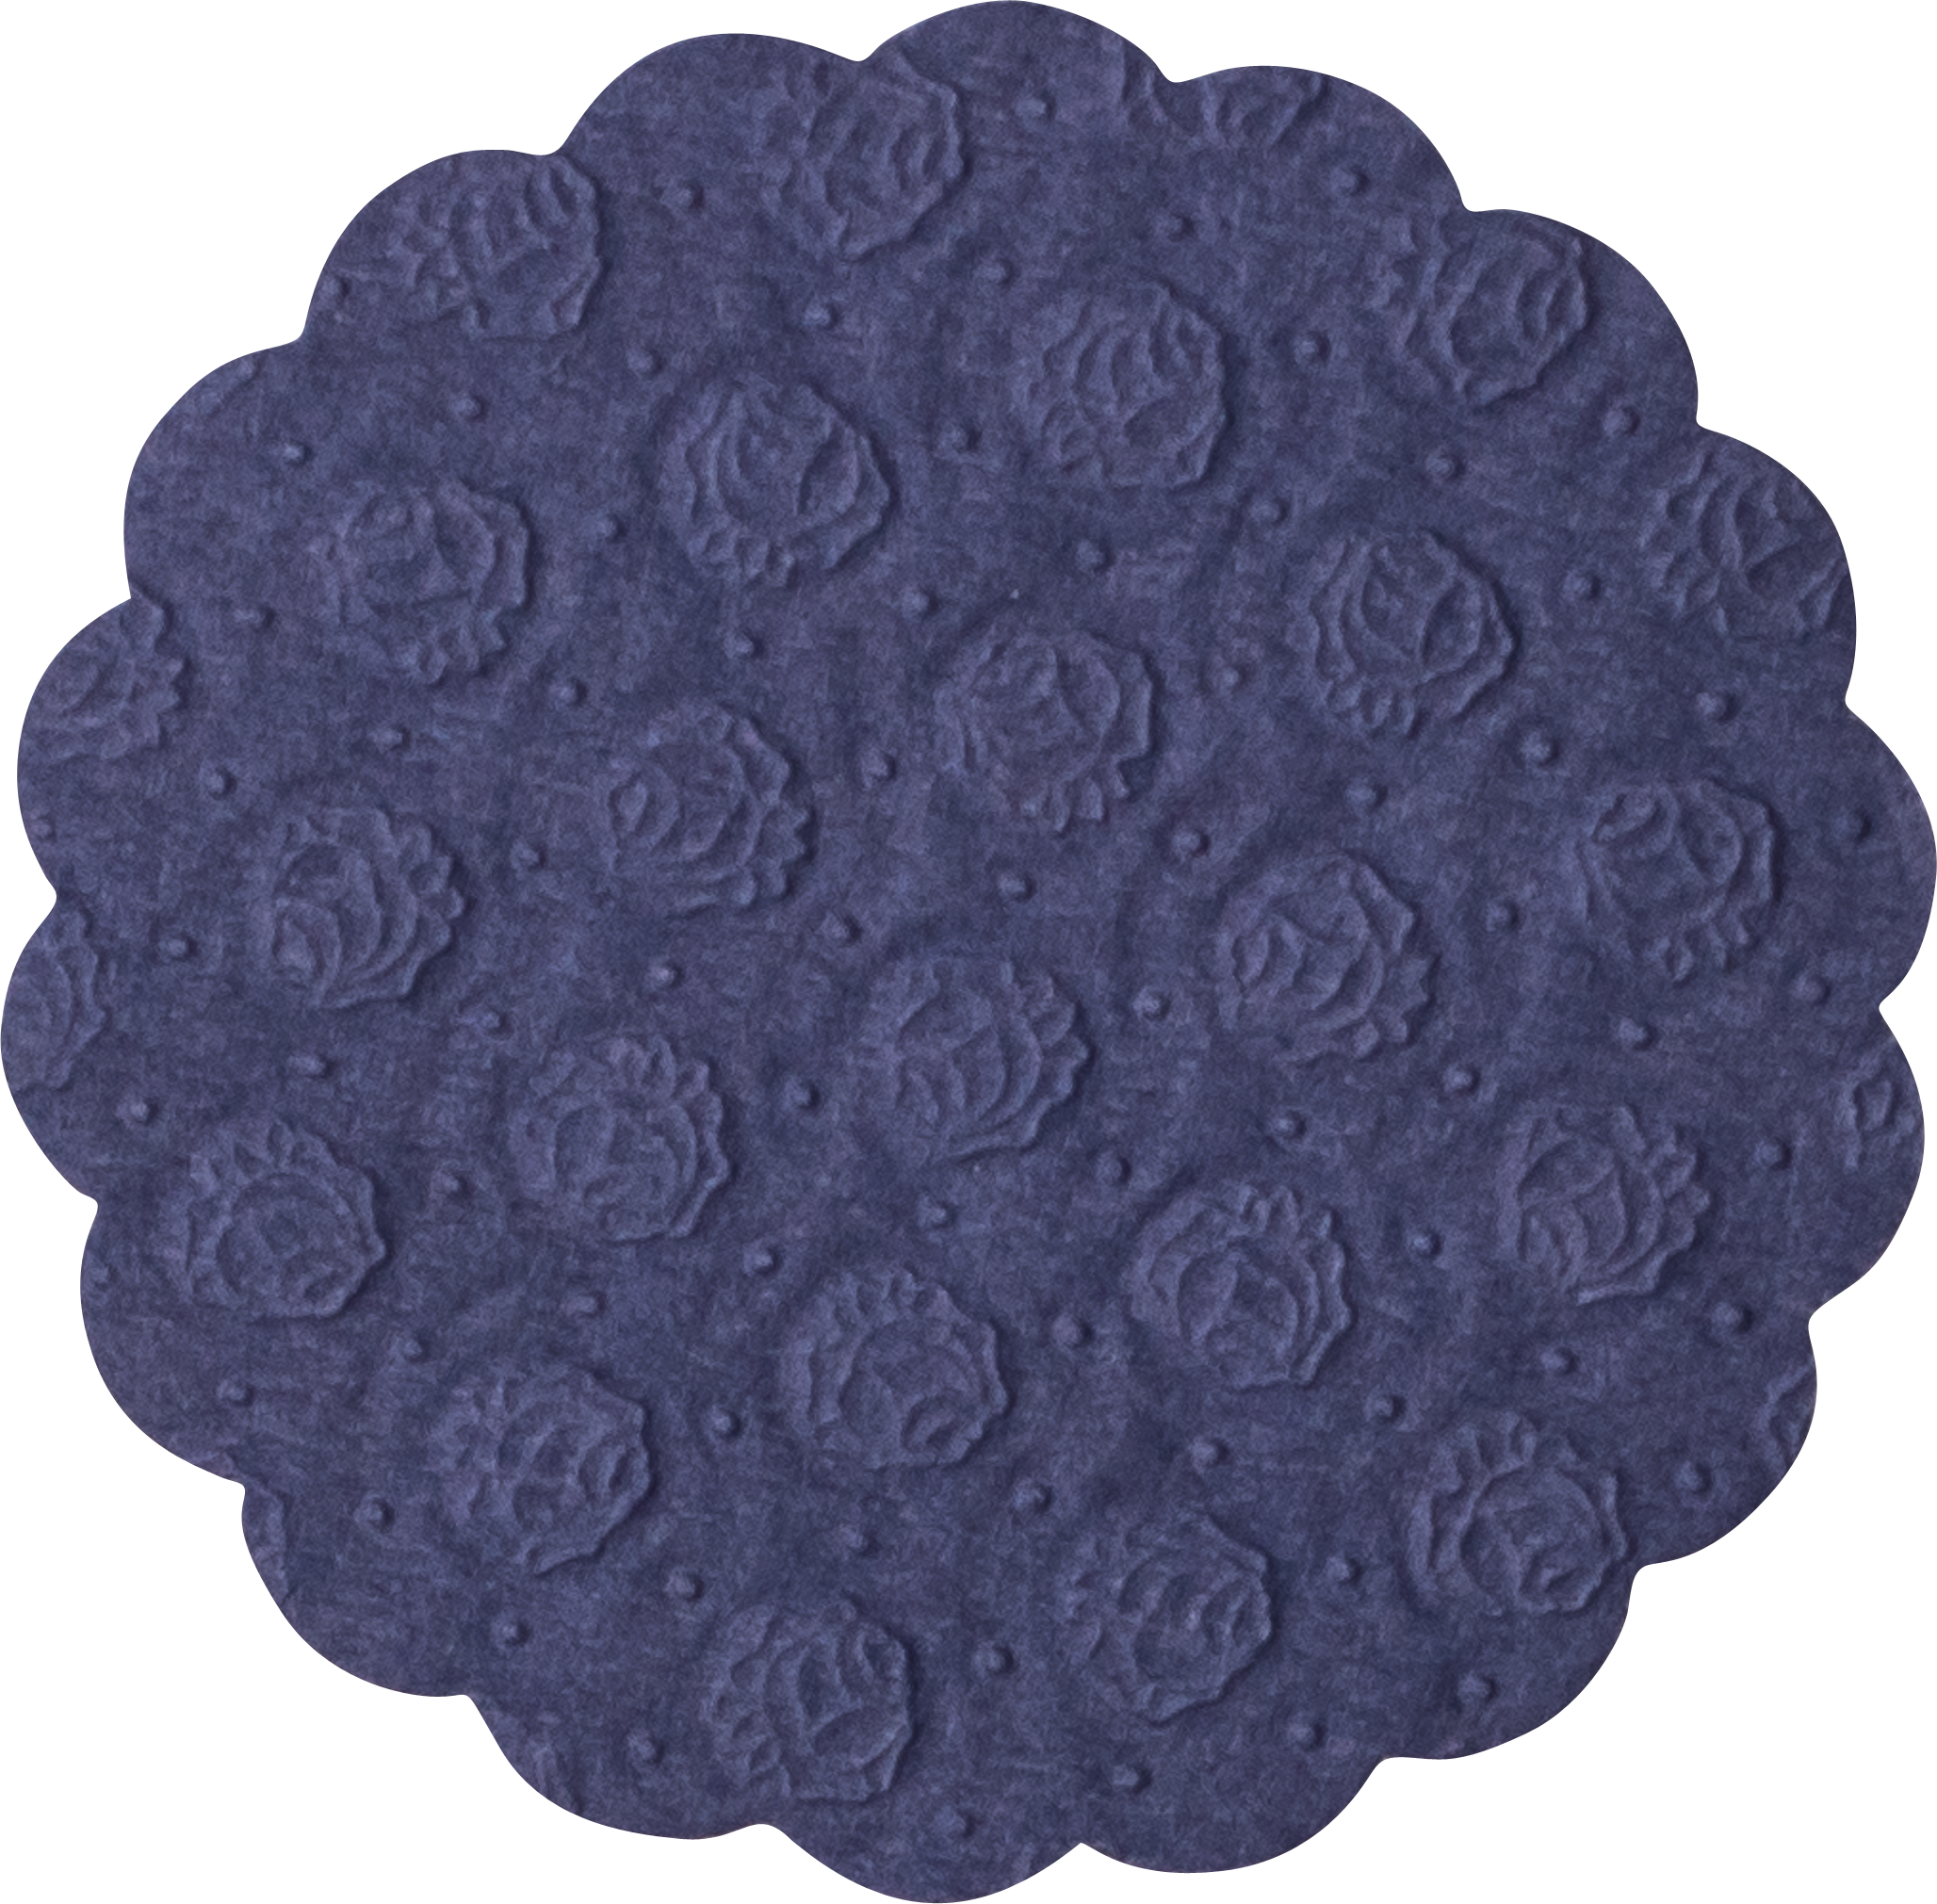 Tissue-Tassendeckchen dunkelblau, ø 9 cm